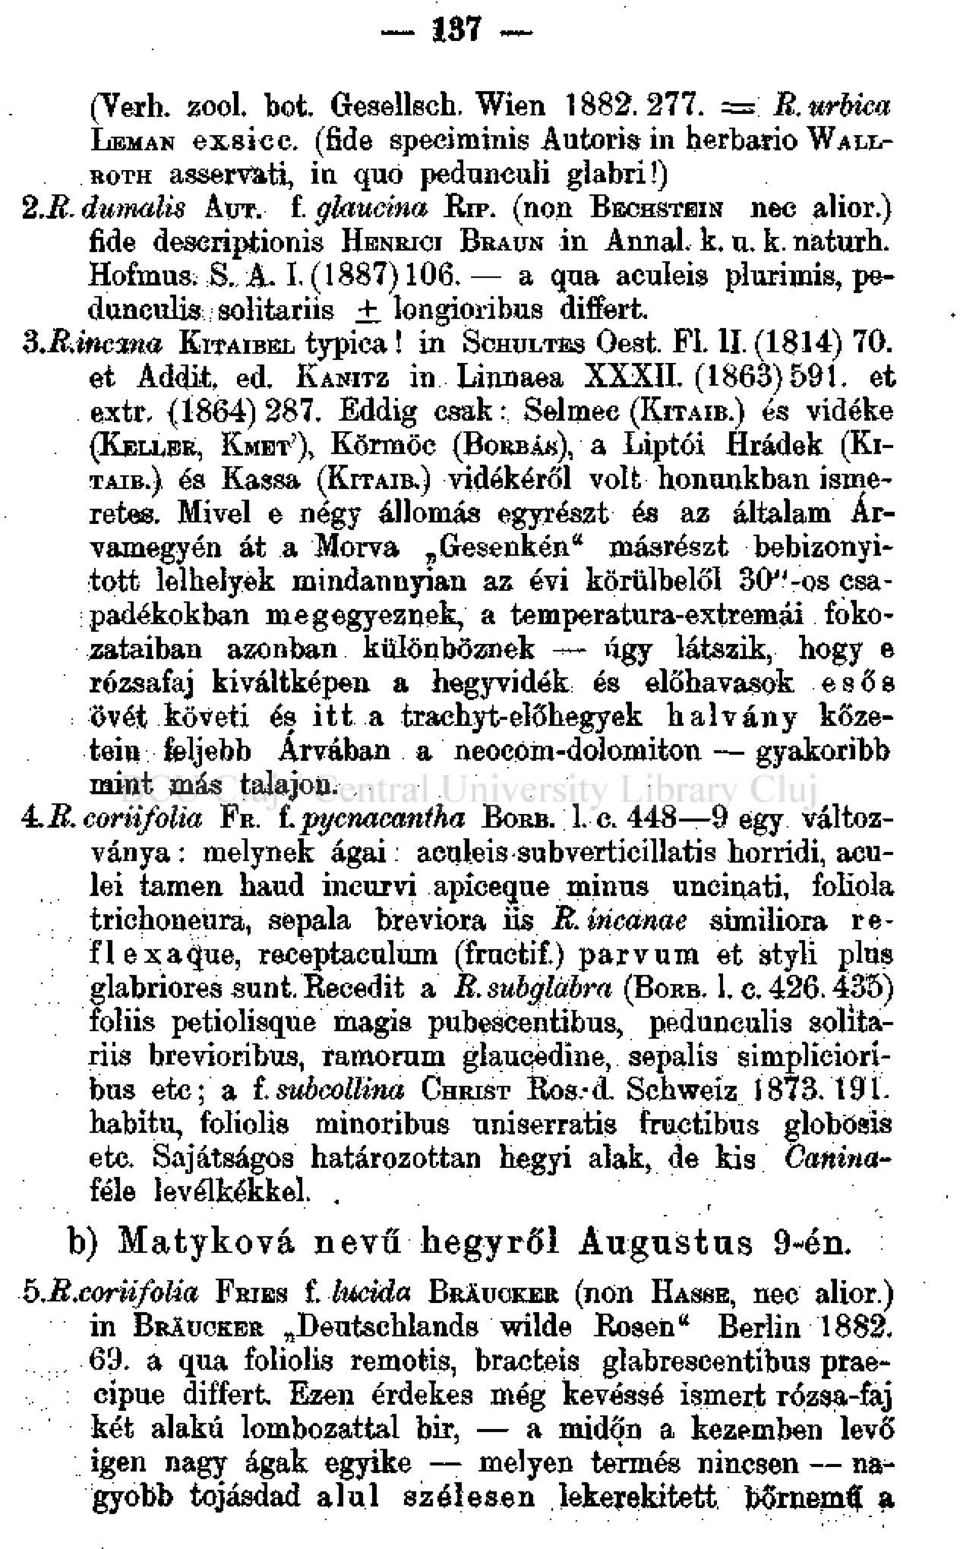 in SCHULTES Oest. FI. II. (1814) 70. et Addii ed. KANITZ in Linnaea XXXII. (1863)591. et extr, (1864) 287. Eddig csak:, Selmee (KITAIB.